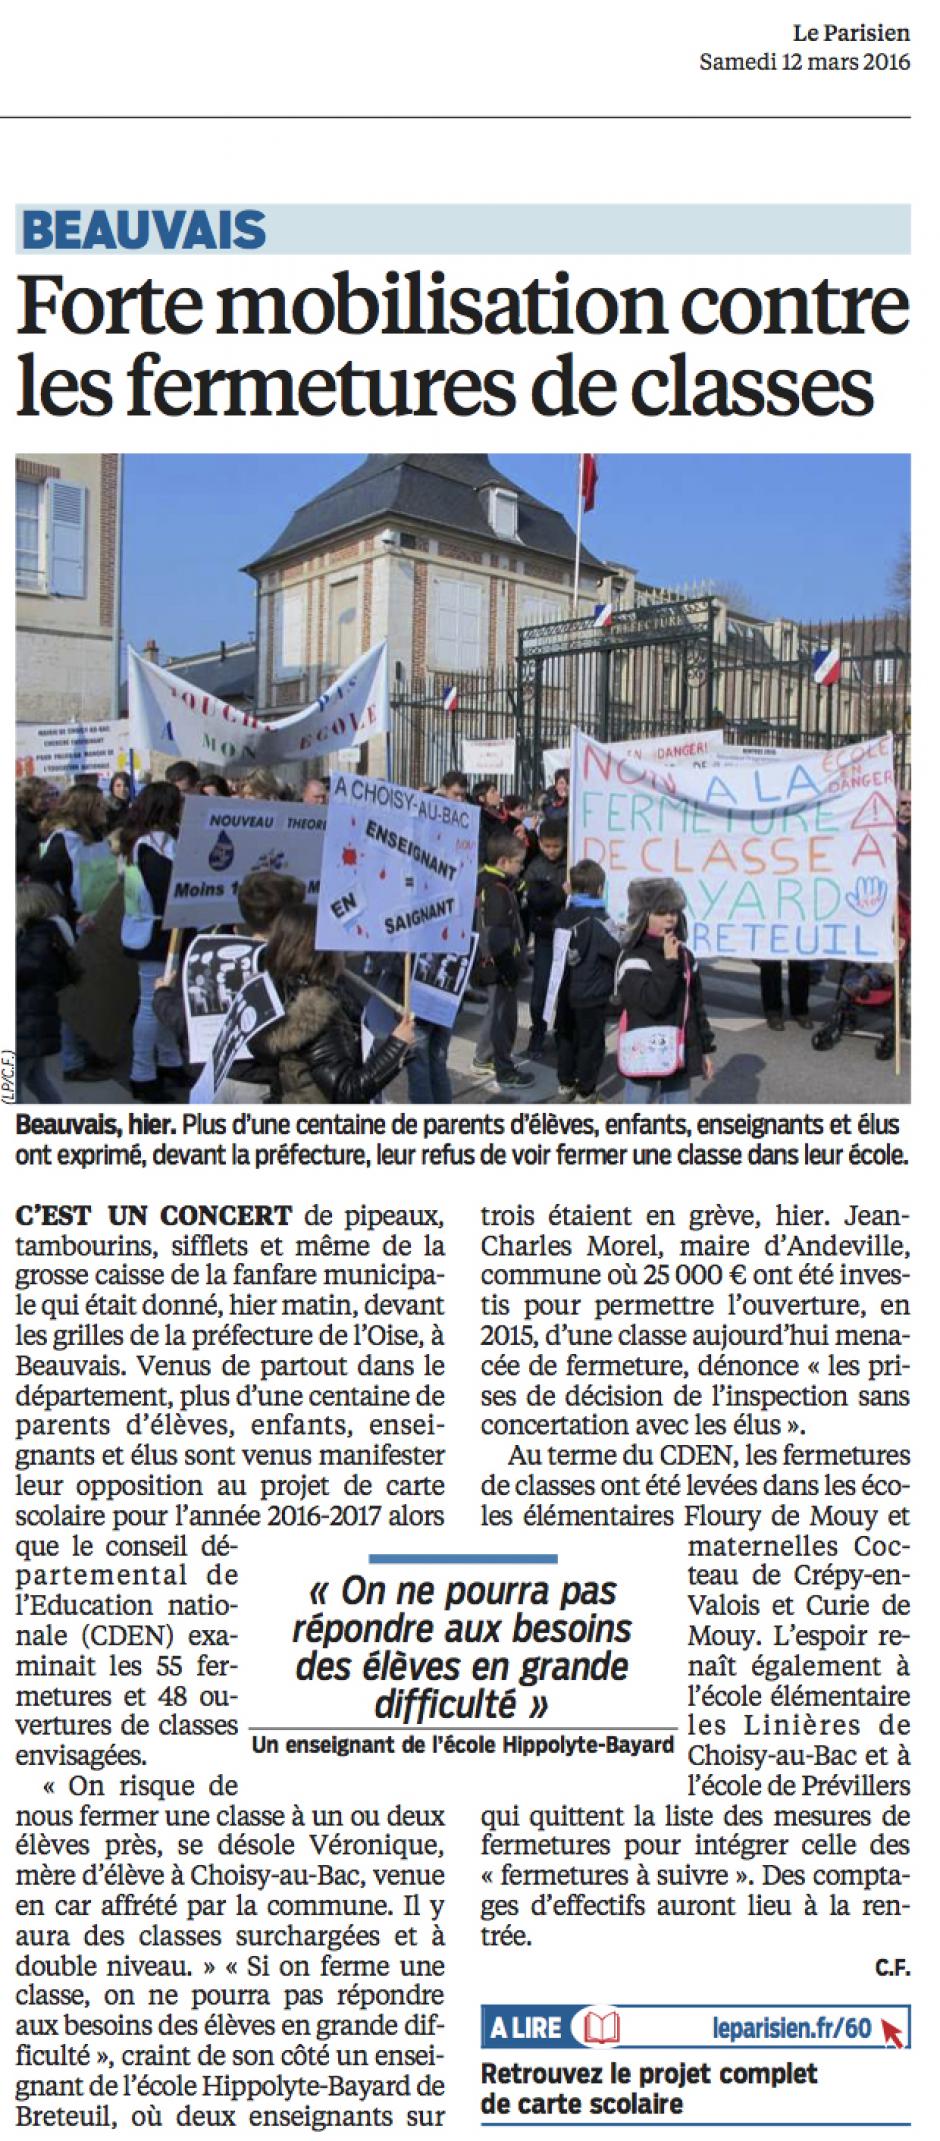 20160312-LeP-Beauvais-Forte mobilisation contre les fermetures de classes